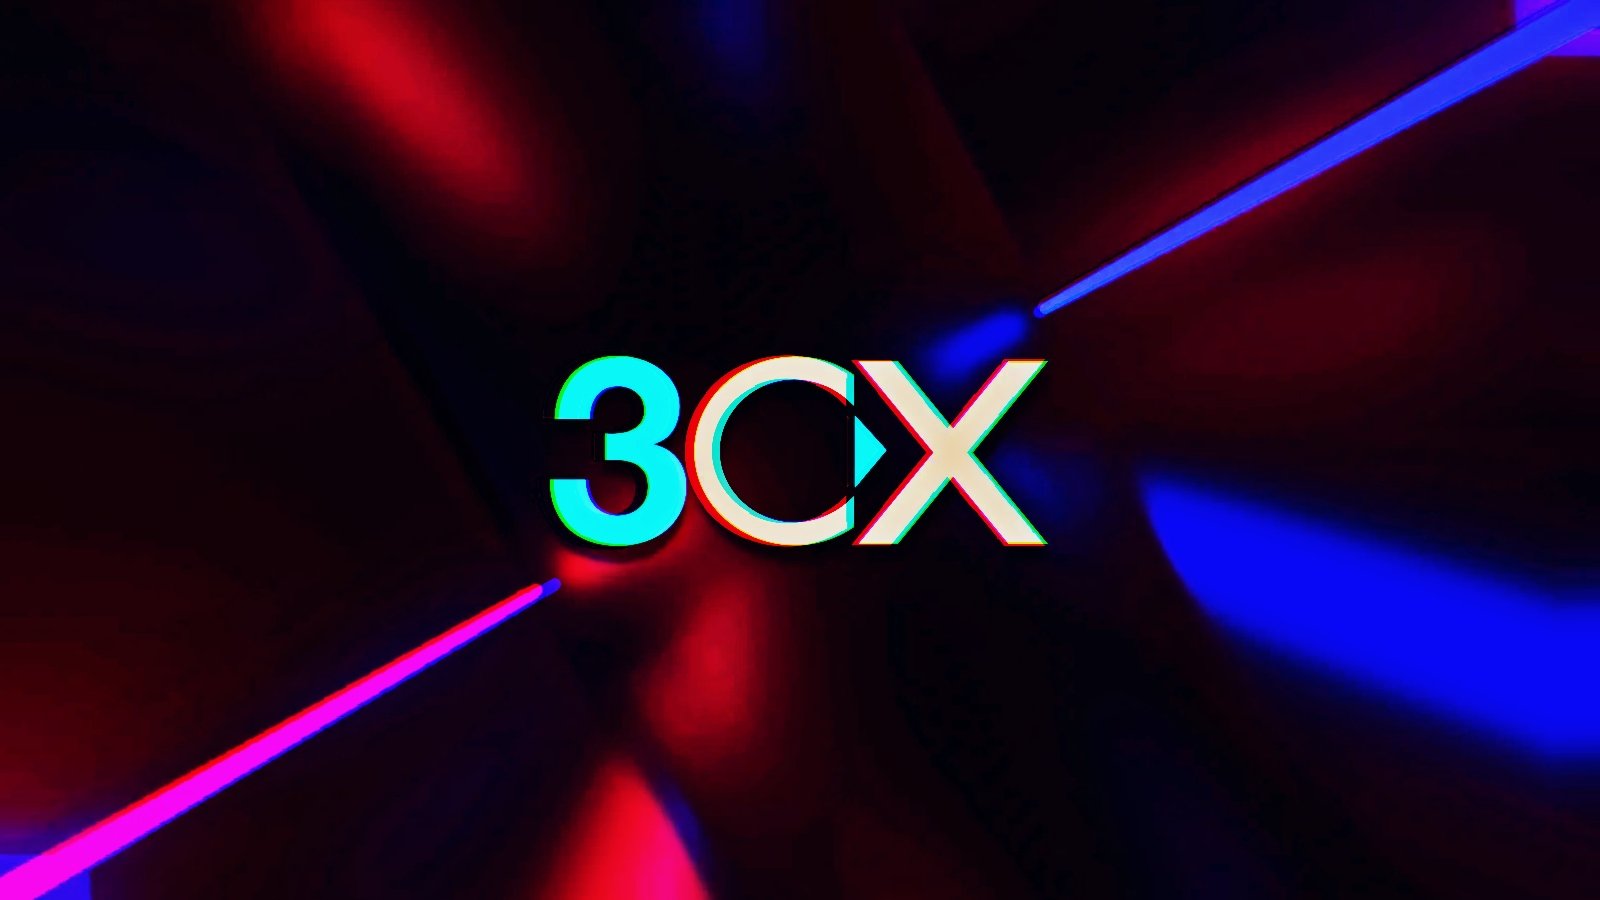 3CX